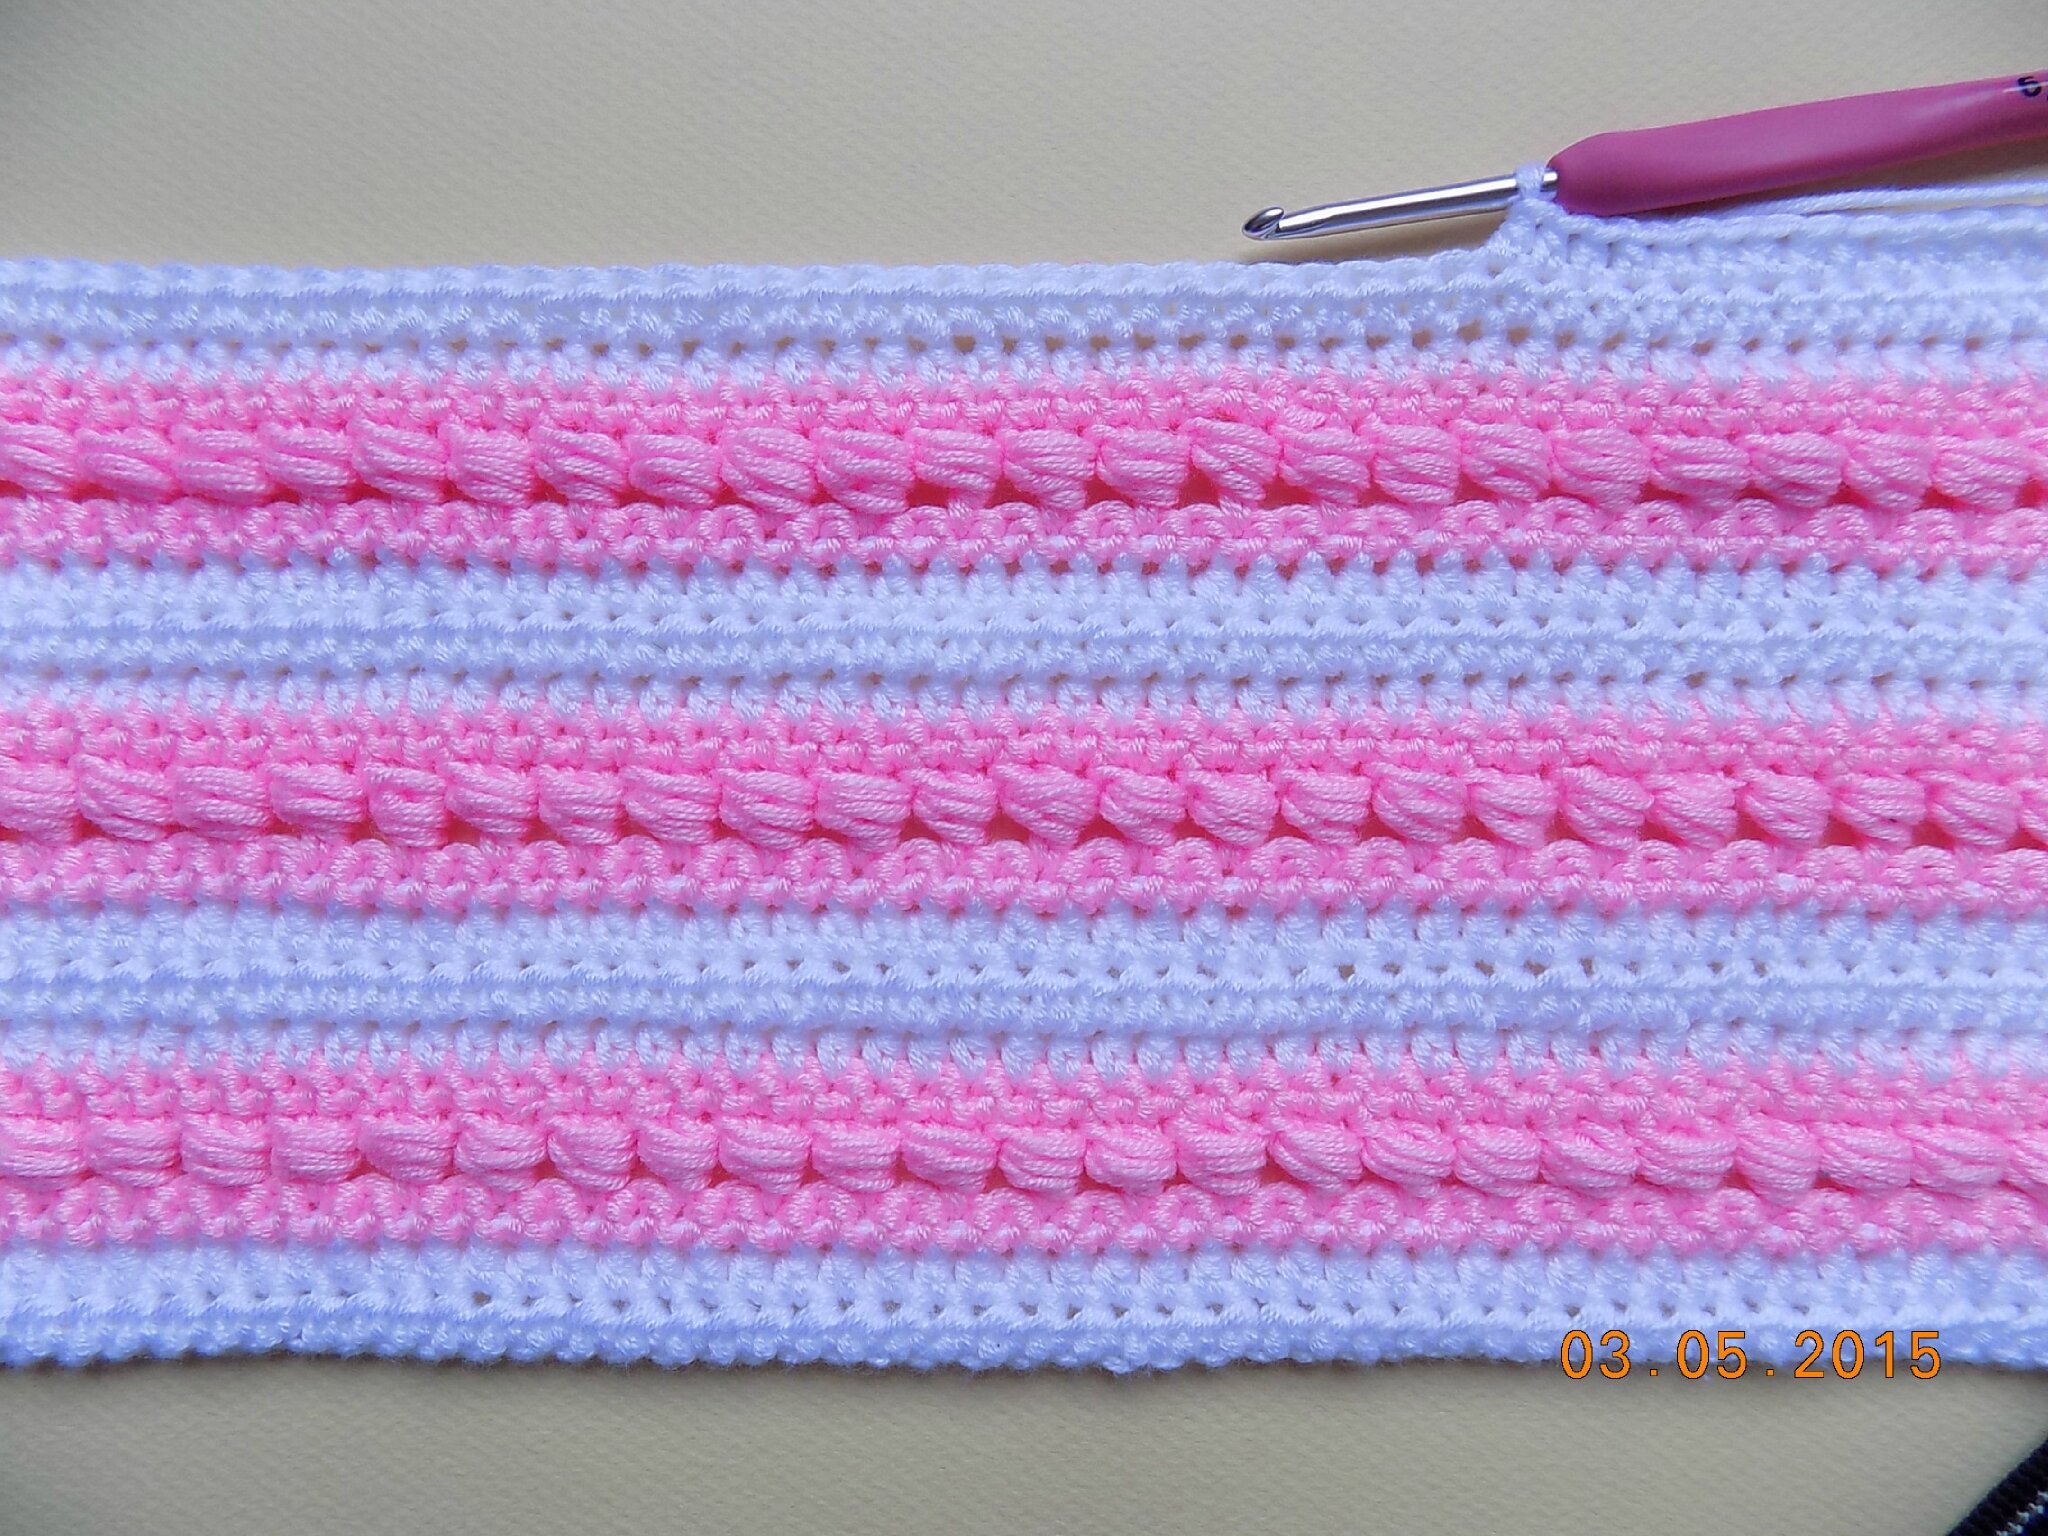 Couverture Bebe Au Crochet Debut De La Couverture Pour Ma Petite Fille Qui Arrive Fin Juin Tricot Choupie Tricote